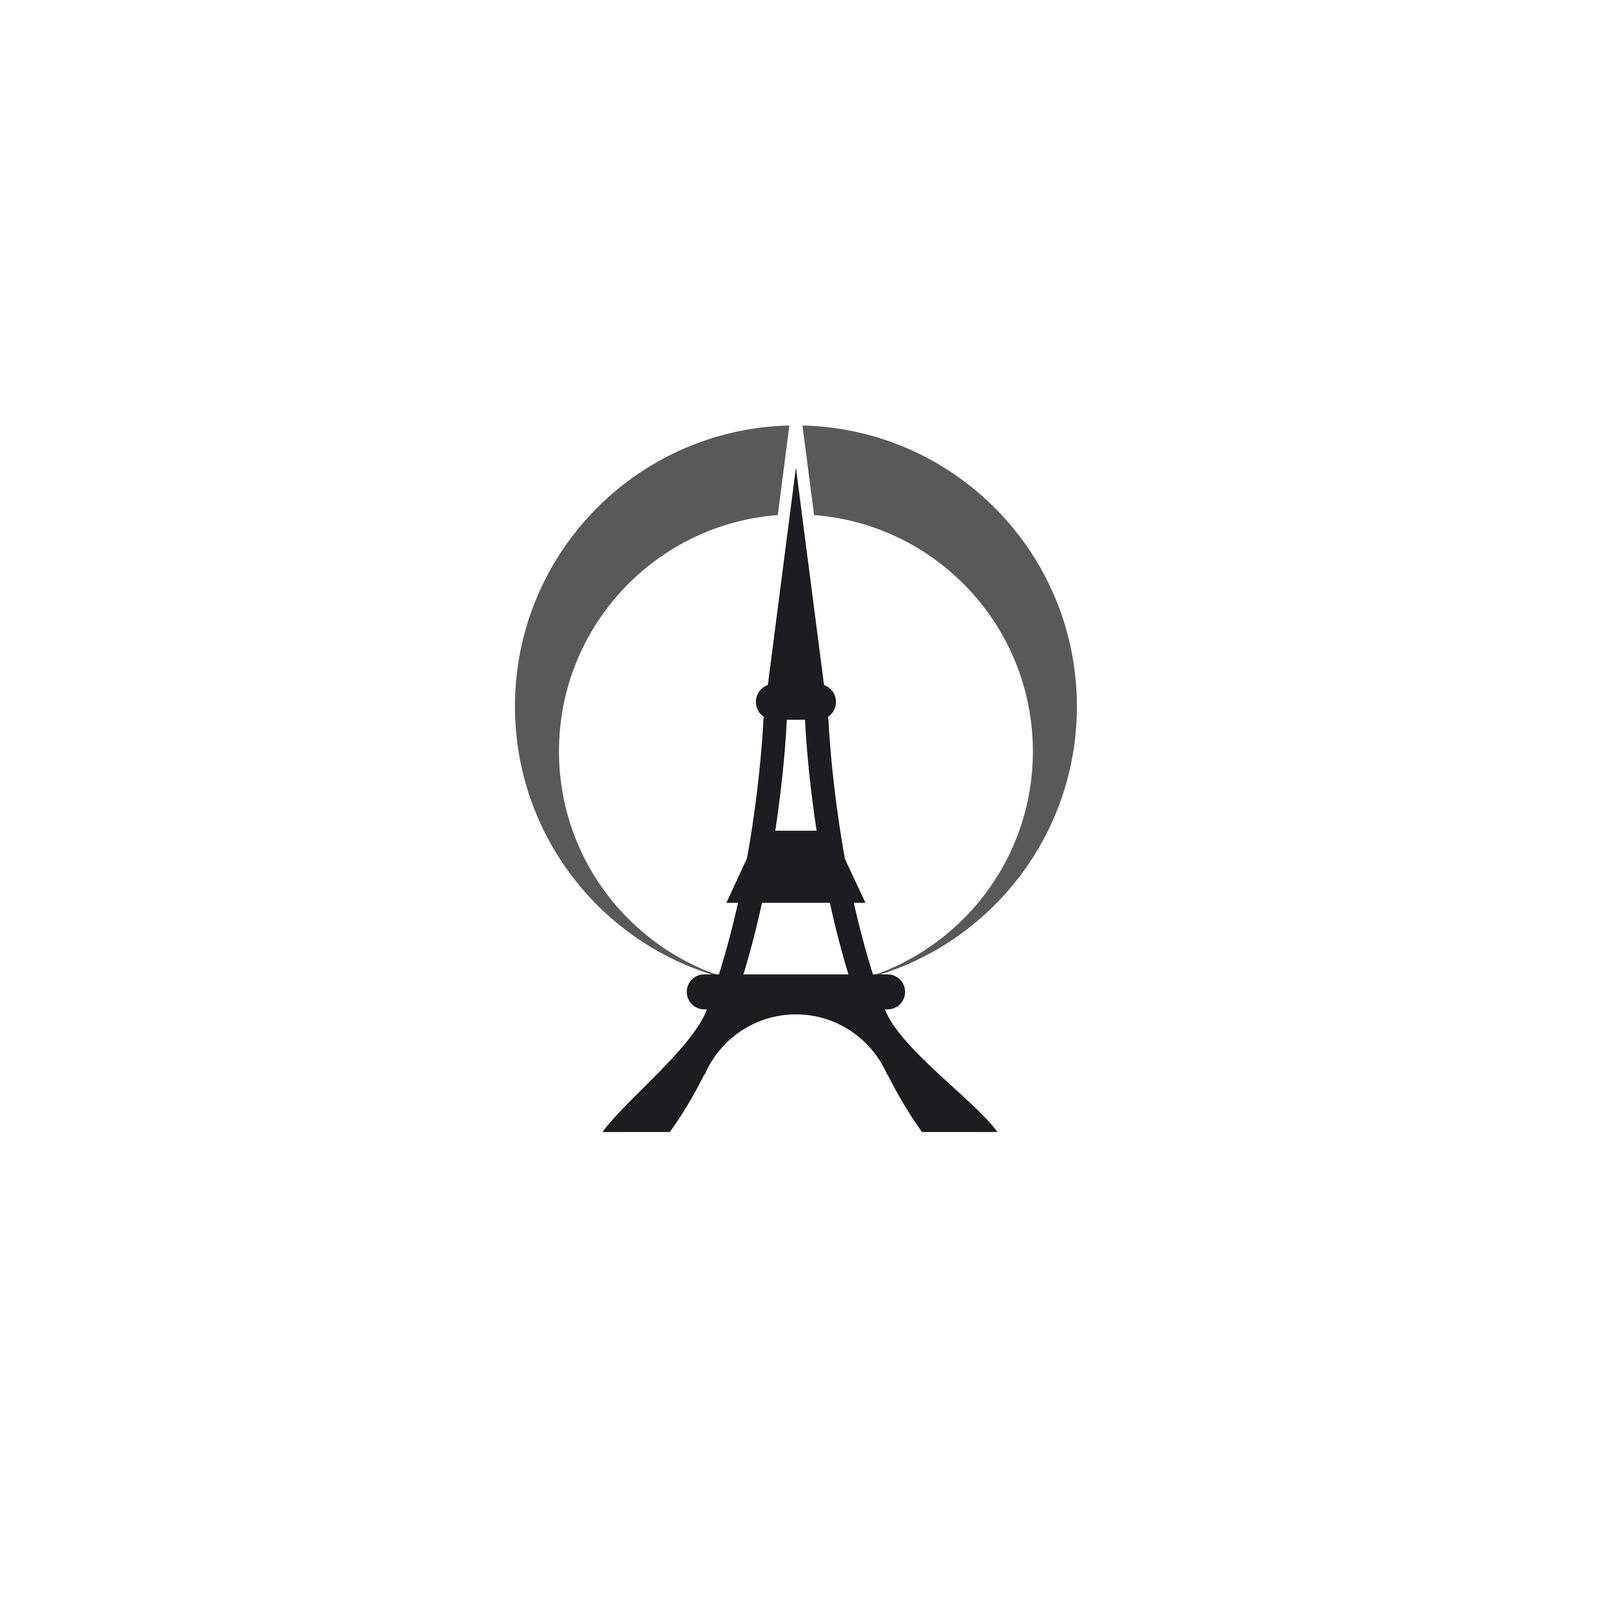 eifel tower logo by awk